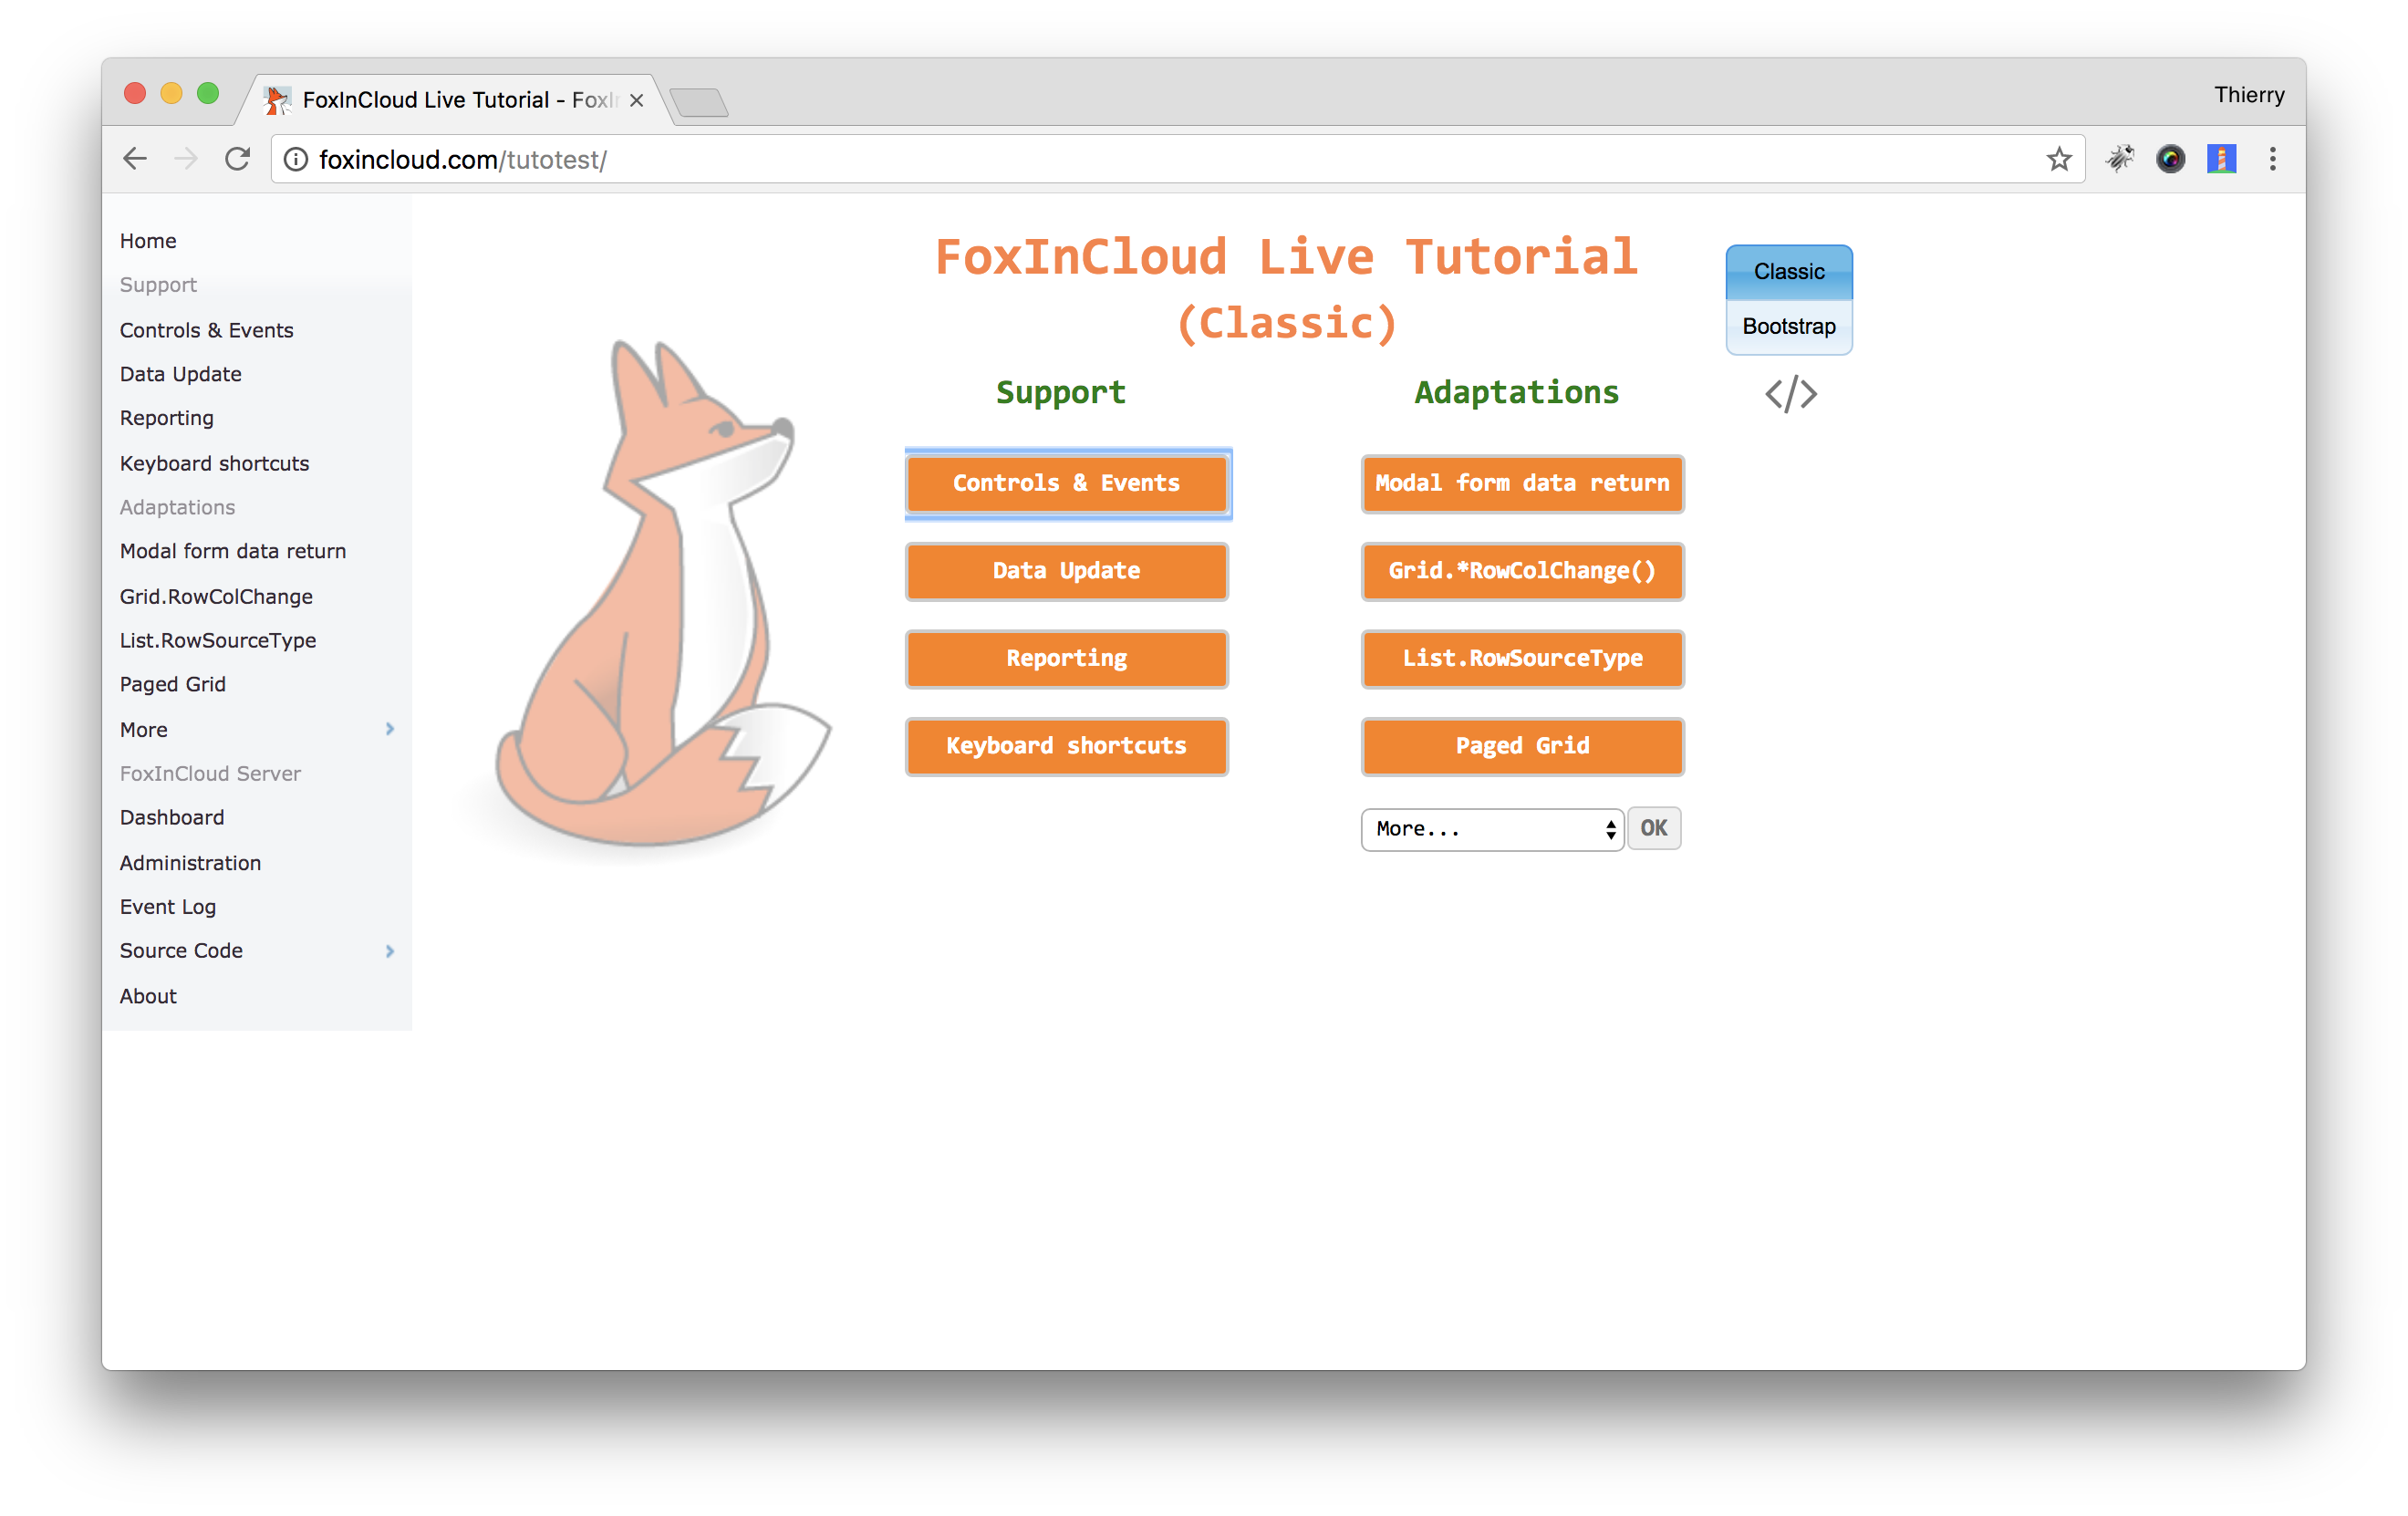 FoxInCloud Live Tutorial (FLT), classic mode